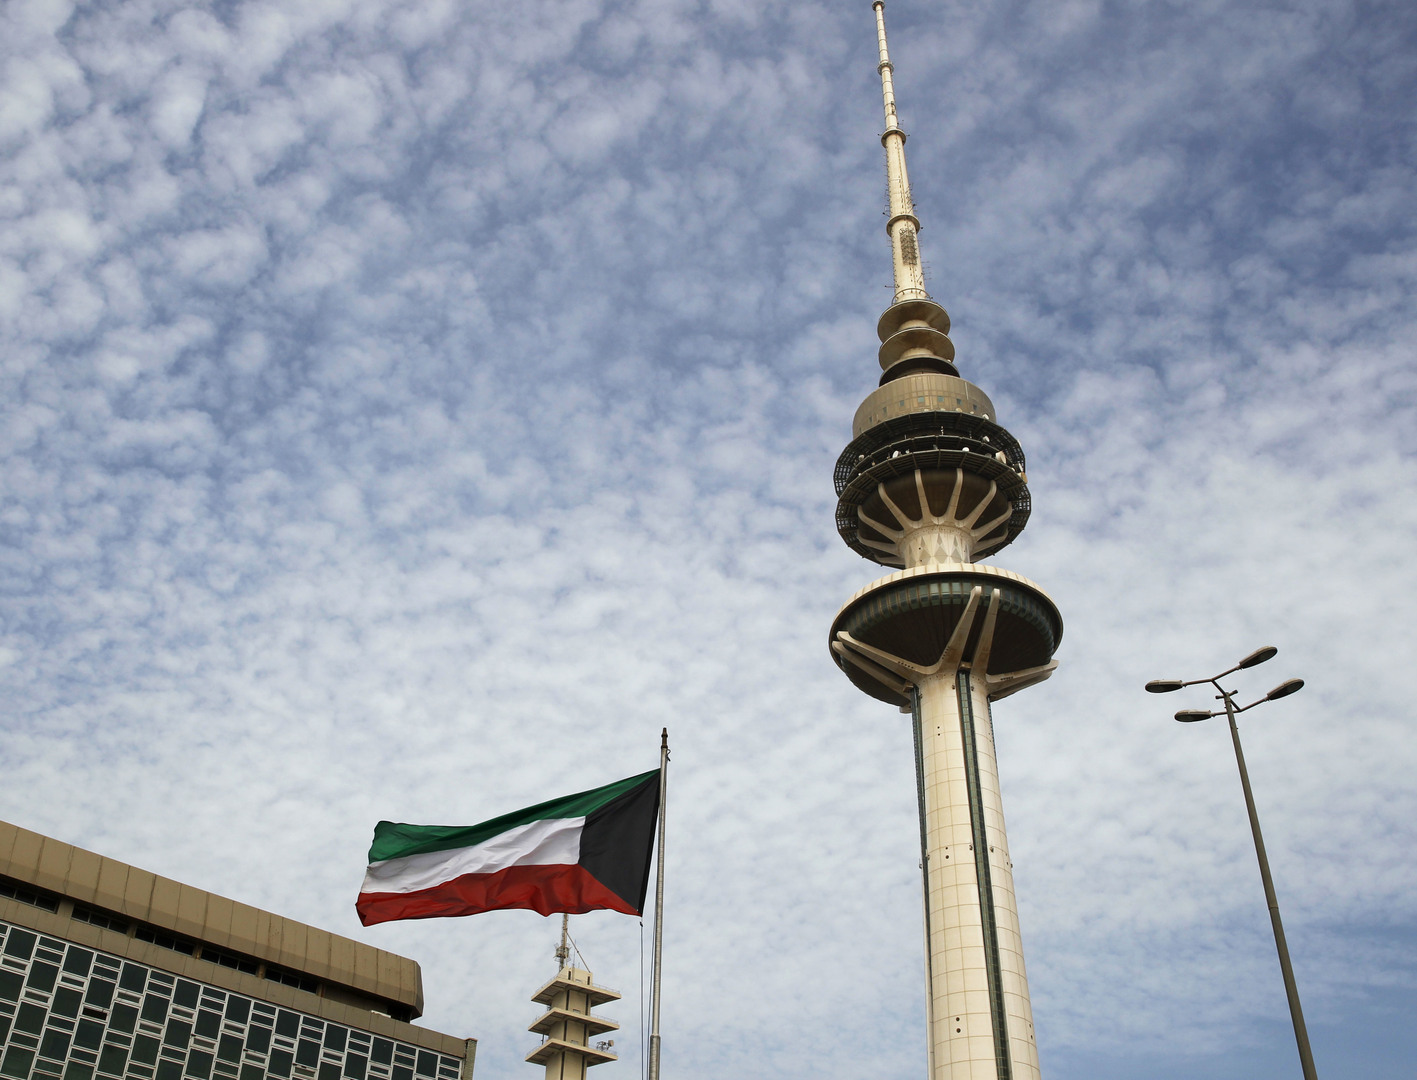 وسائل إعلام: الحكومة الكويتية تلاحق وزير الدفاع الأسبق مجددا عبر القضاء الأمريكي